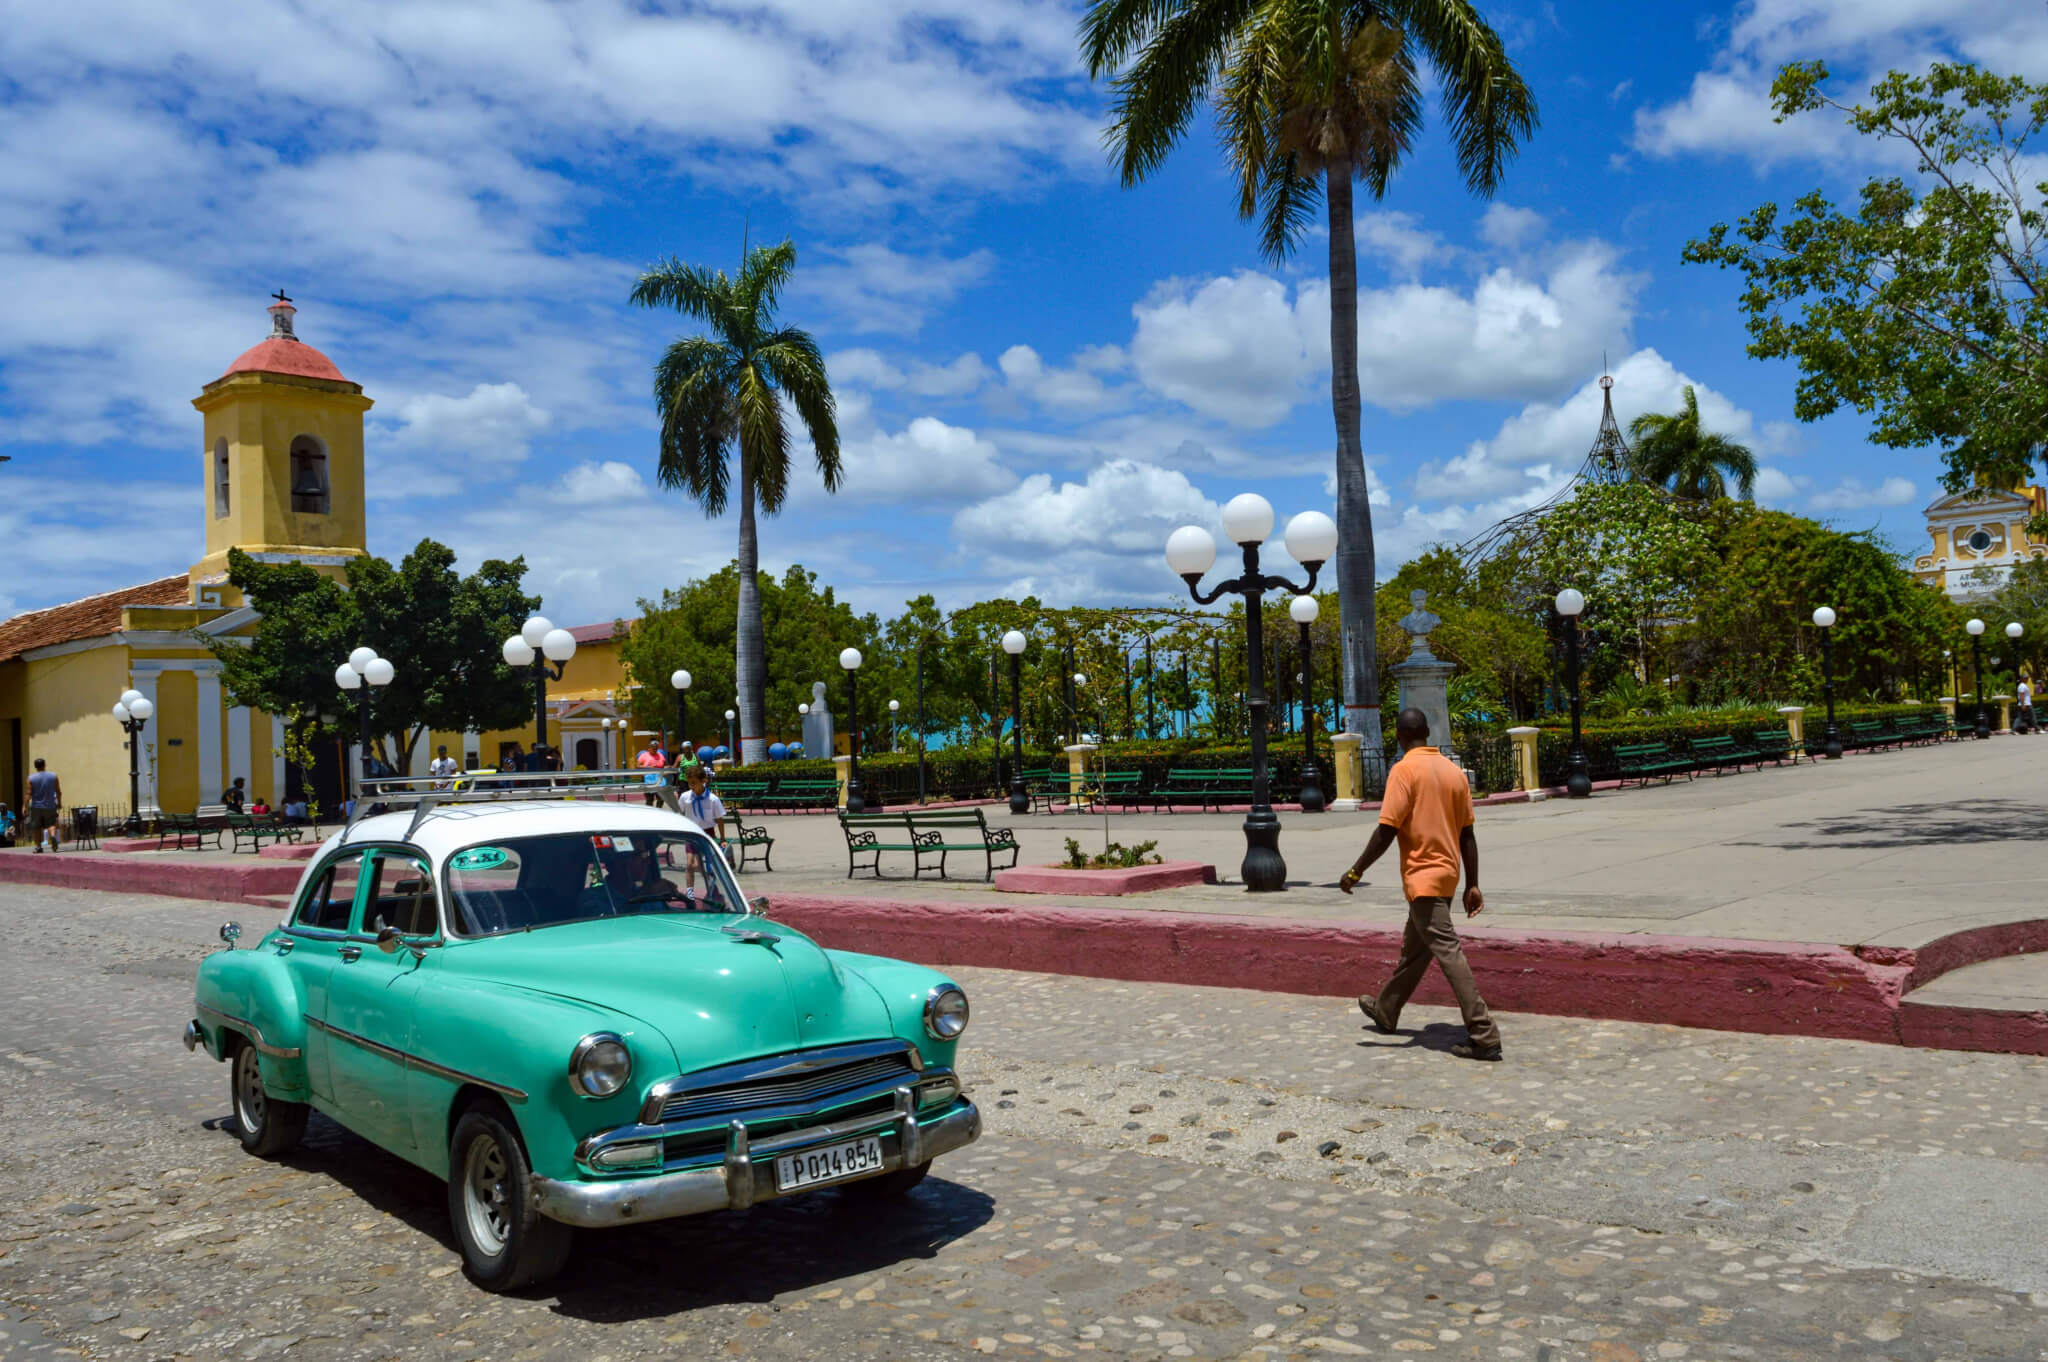 Collectivo taxis in Cuba